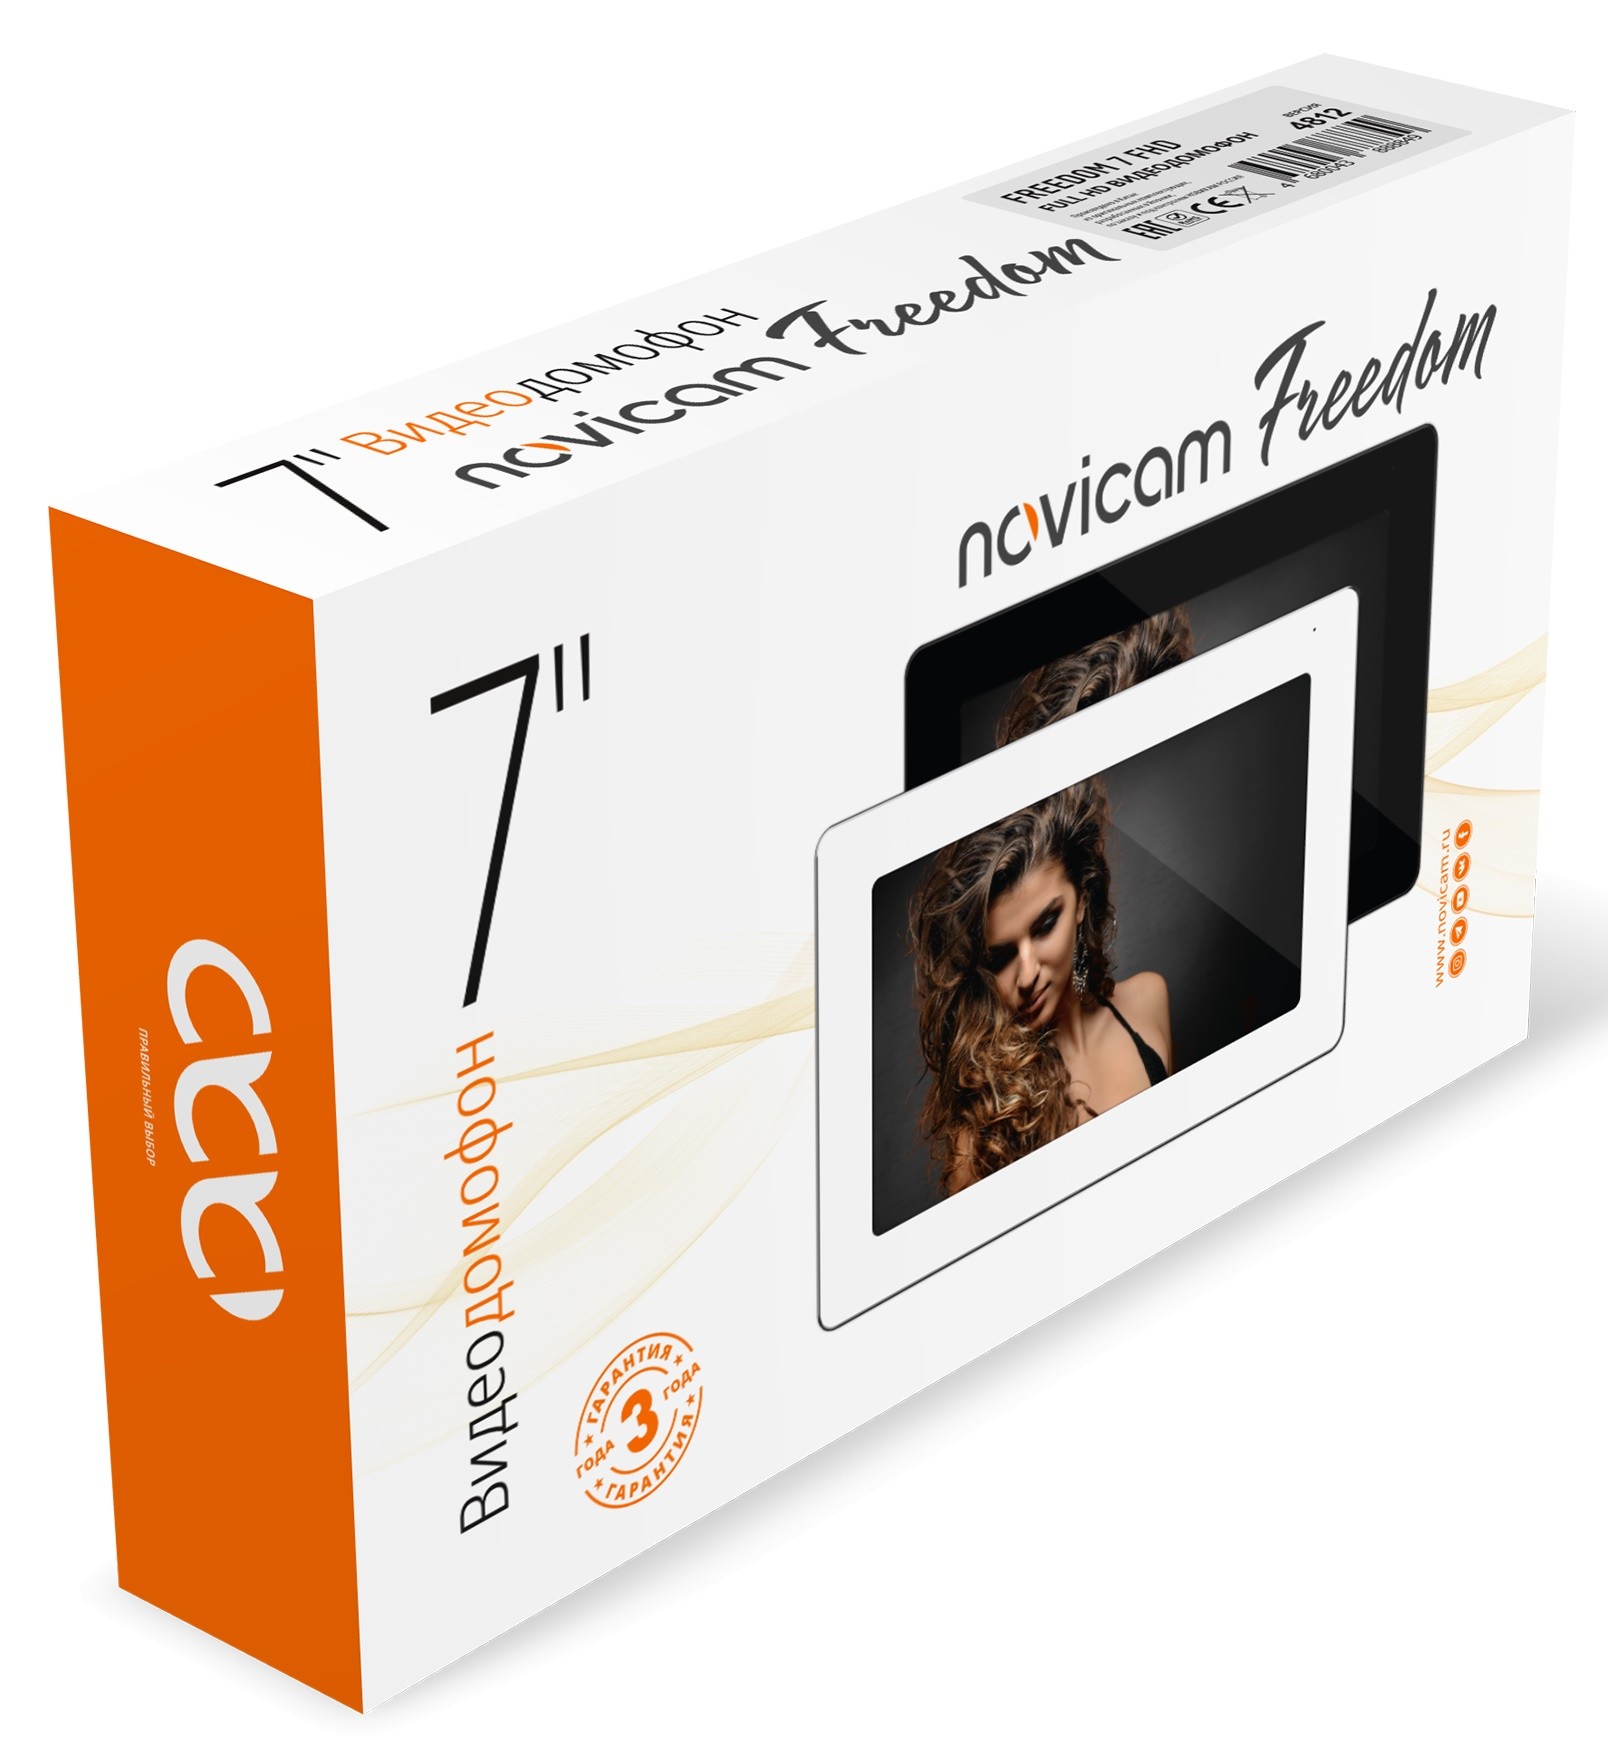 FREEDOM 7 FHD (ver. 4812) NOVIcam видеодомофон Full HD